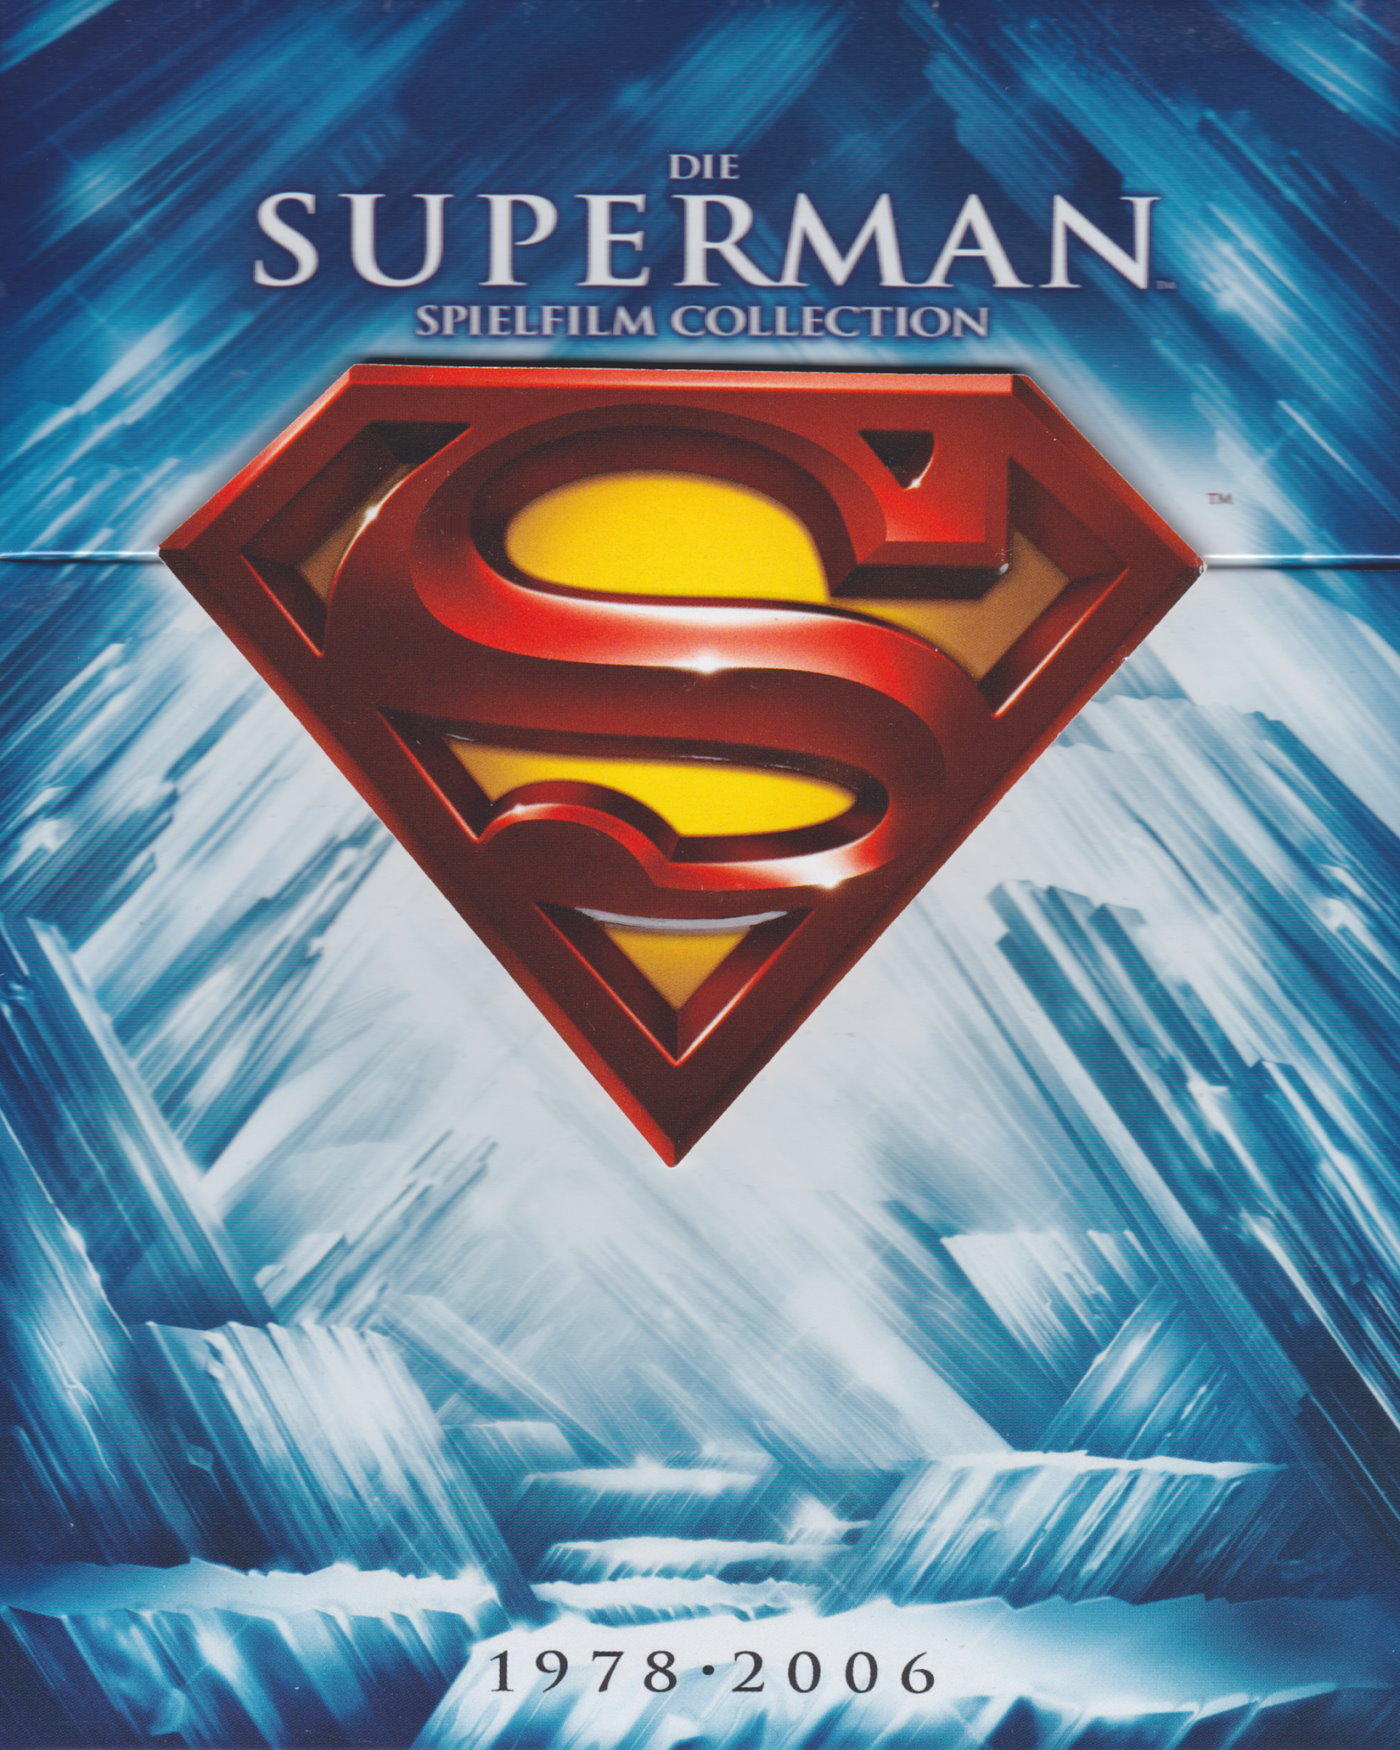 Cover - Superman Returns.jpg